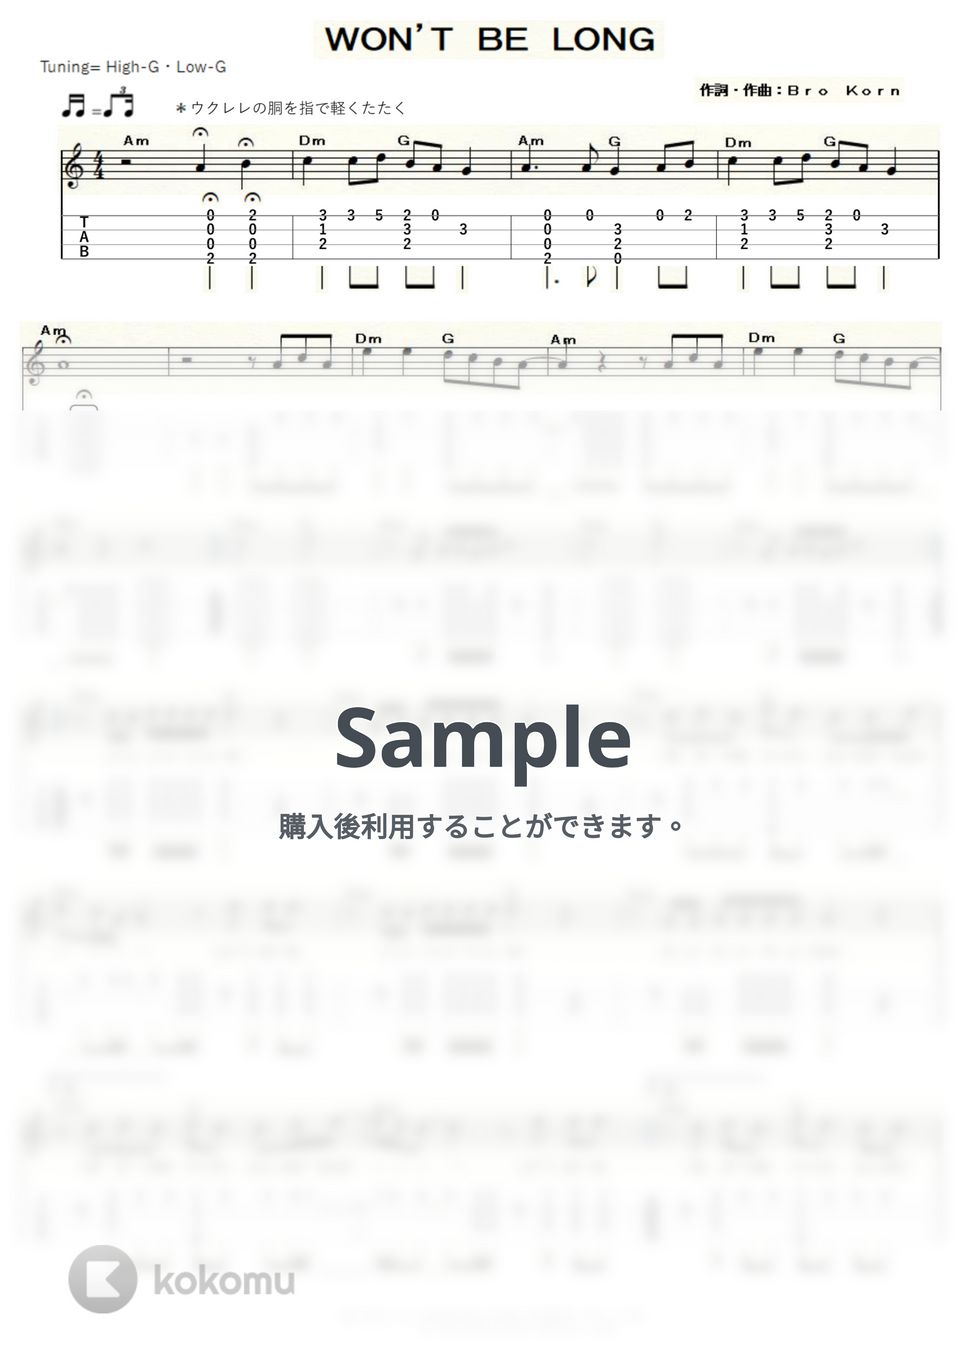 バブルガム・ブラザーズ - WON'T BE LONG (ｳｸﾚﾚｿﾛ / High-G・Low-G / 中級～上級) by ukulelepapa